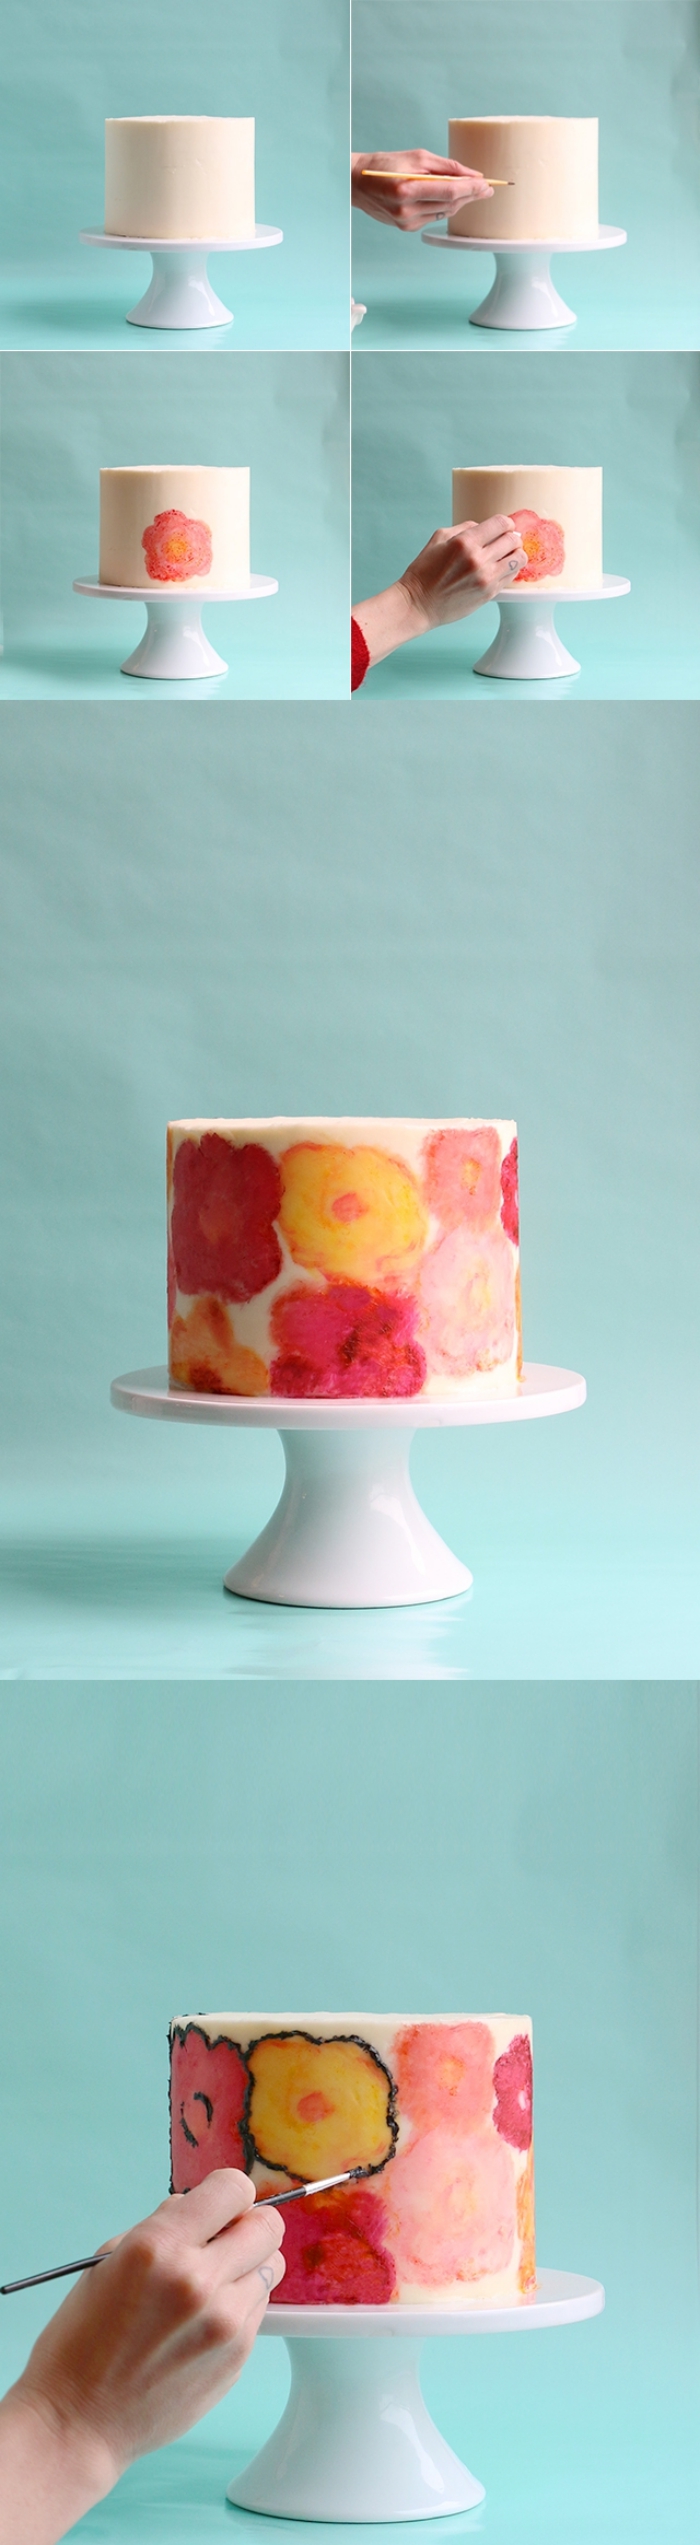 tuto pour réaliser une jolie décoration florale sur un glaçage au beurre avec des colorants alimentaires gel, dessin gateau anniversaire